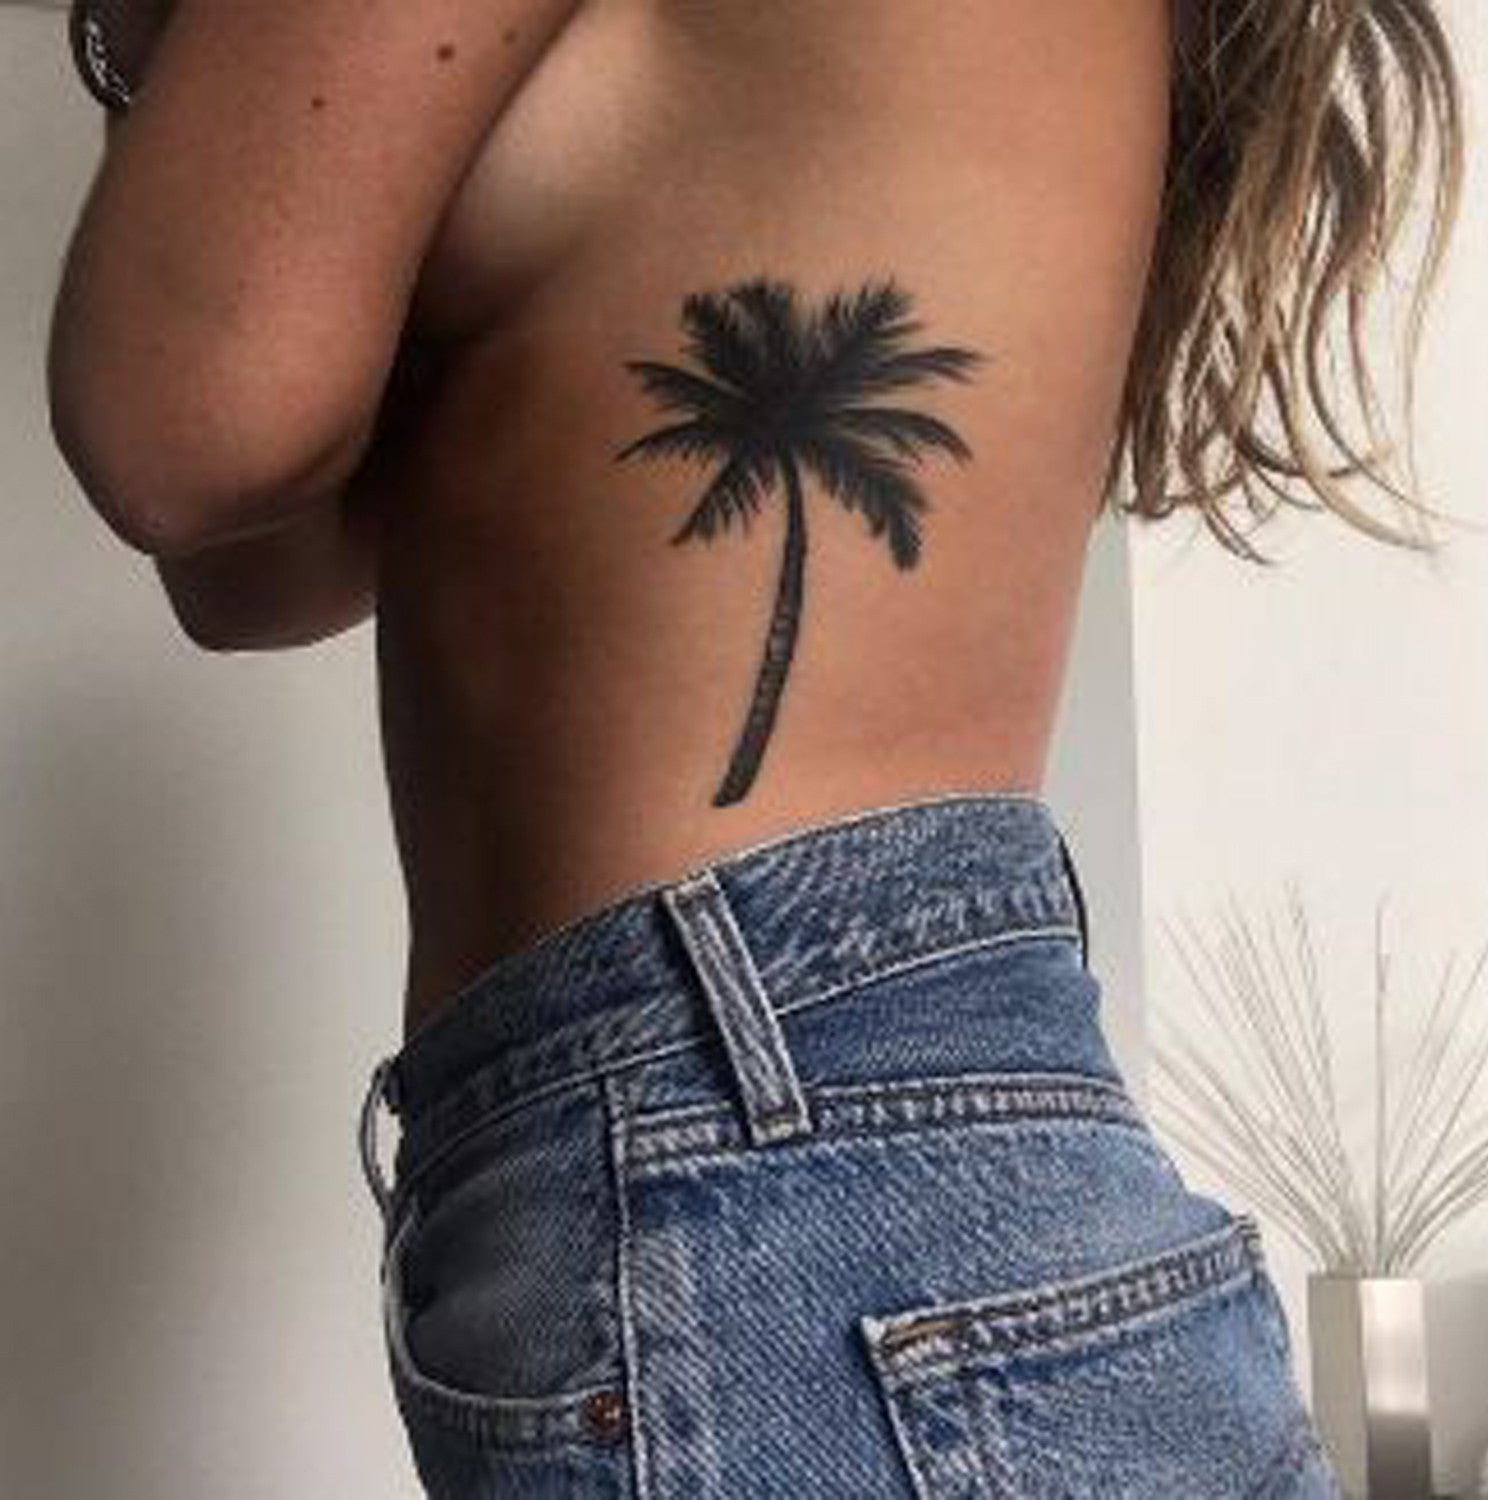 Womens Rib Tattoo Ideas - Palm Tree Side Tat - MyBodiArt.com